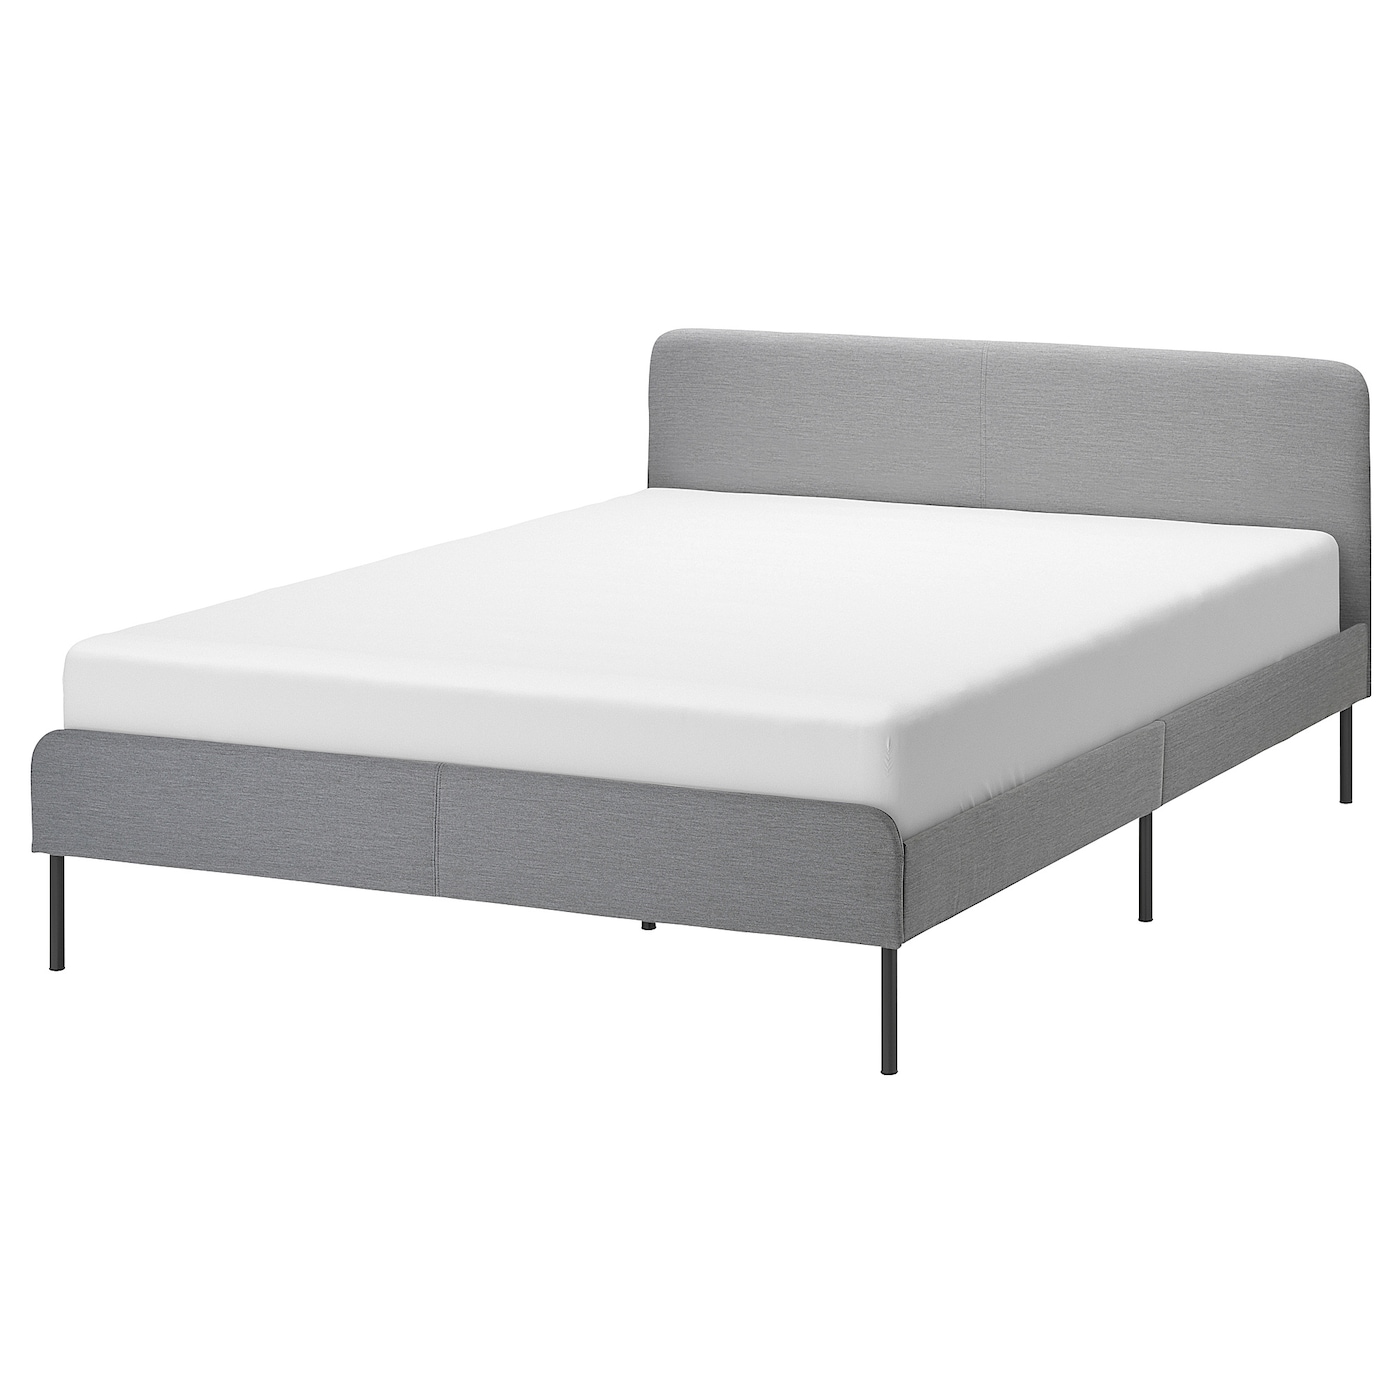 Двуспальная кровать - IKEA SLATTUM, 200х160 см, светло-серый, СЛАТТУМ ИКЕА